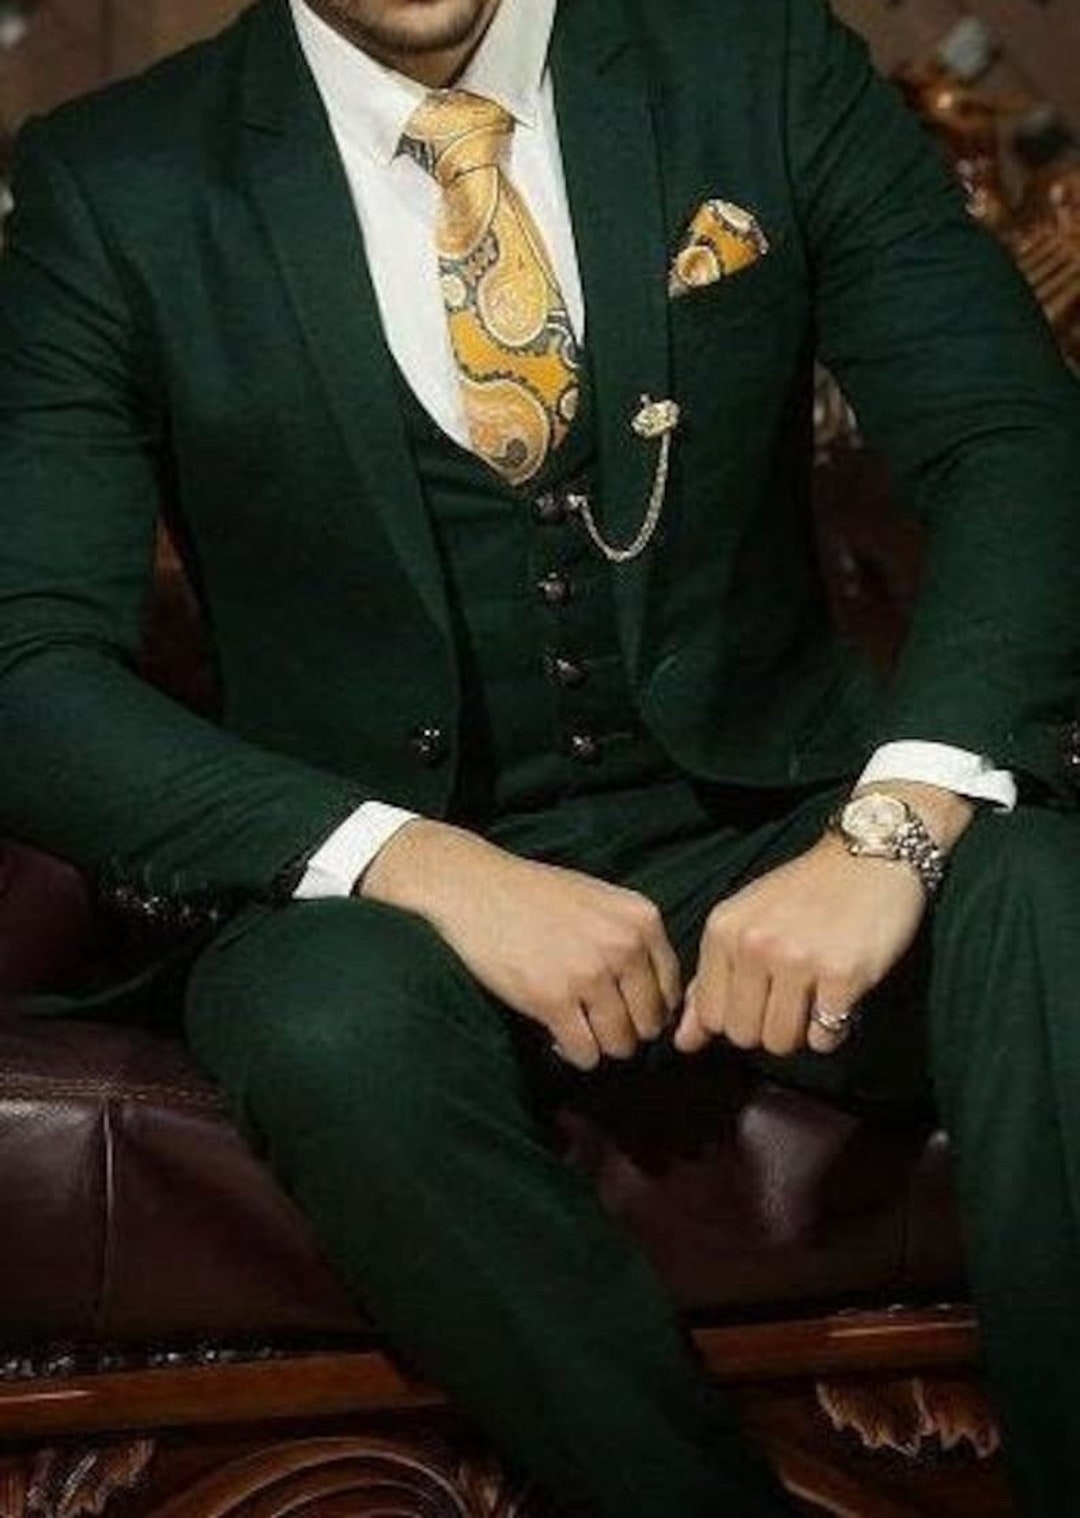 GREEN WEDDING SUIT Elegant Green Suit Men Wedding Suit - Etsy